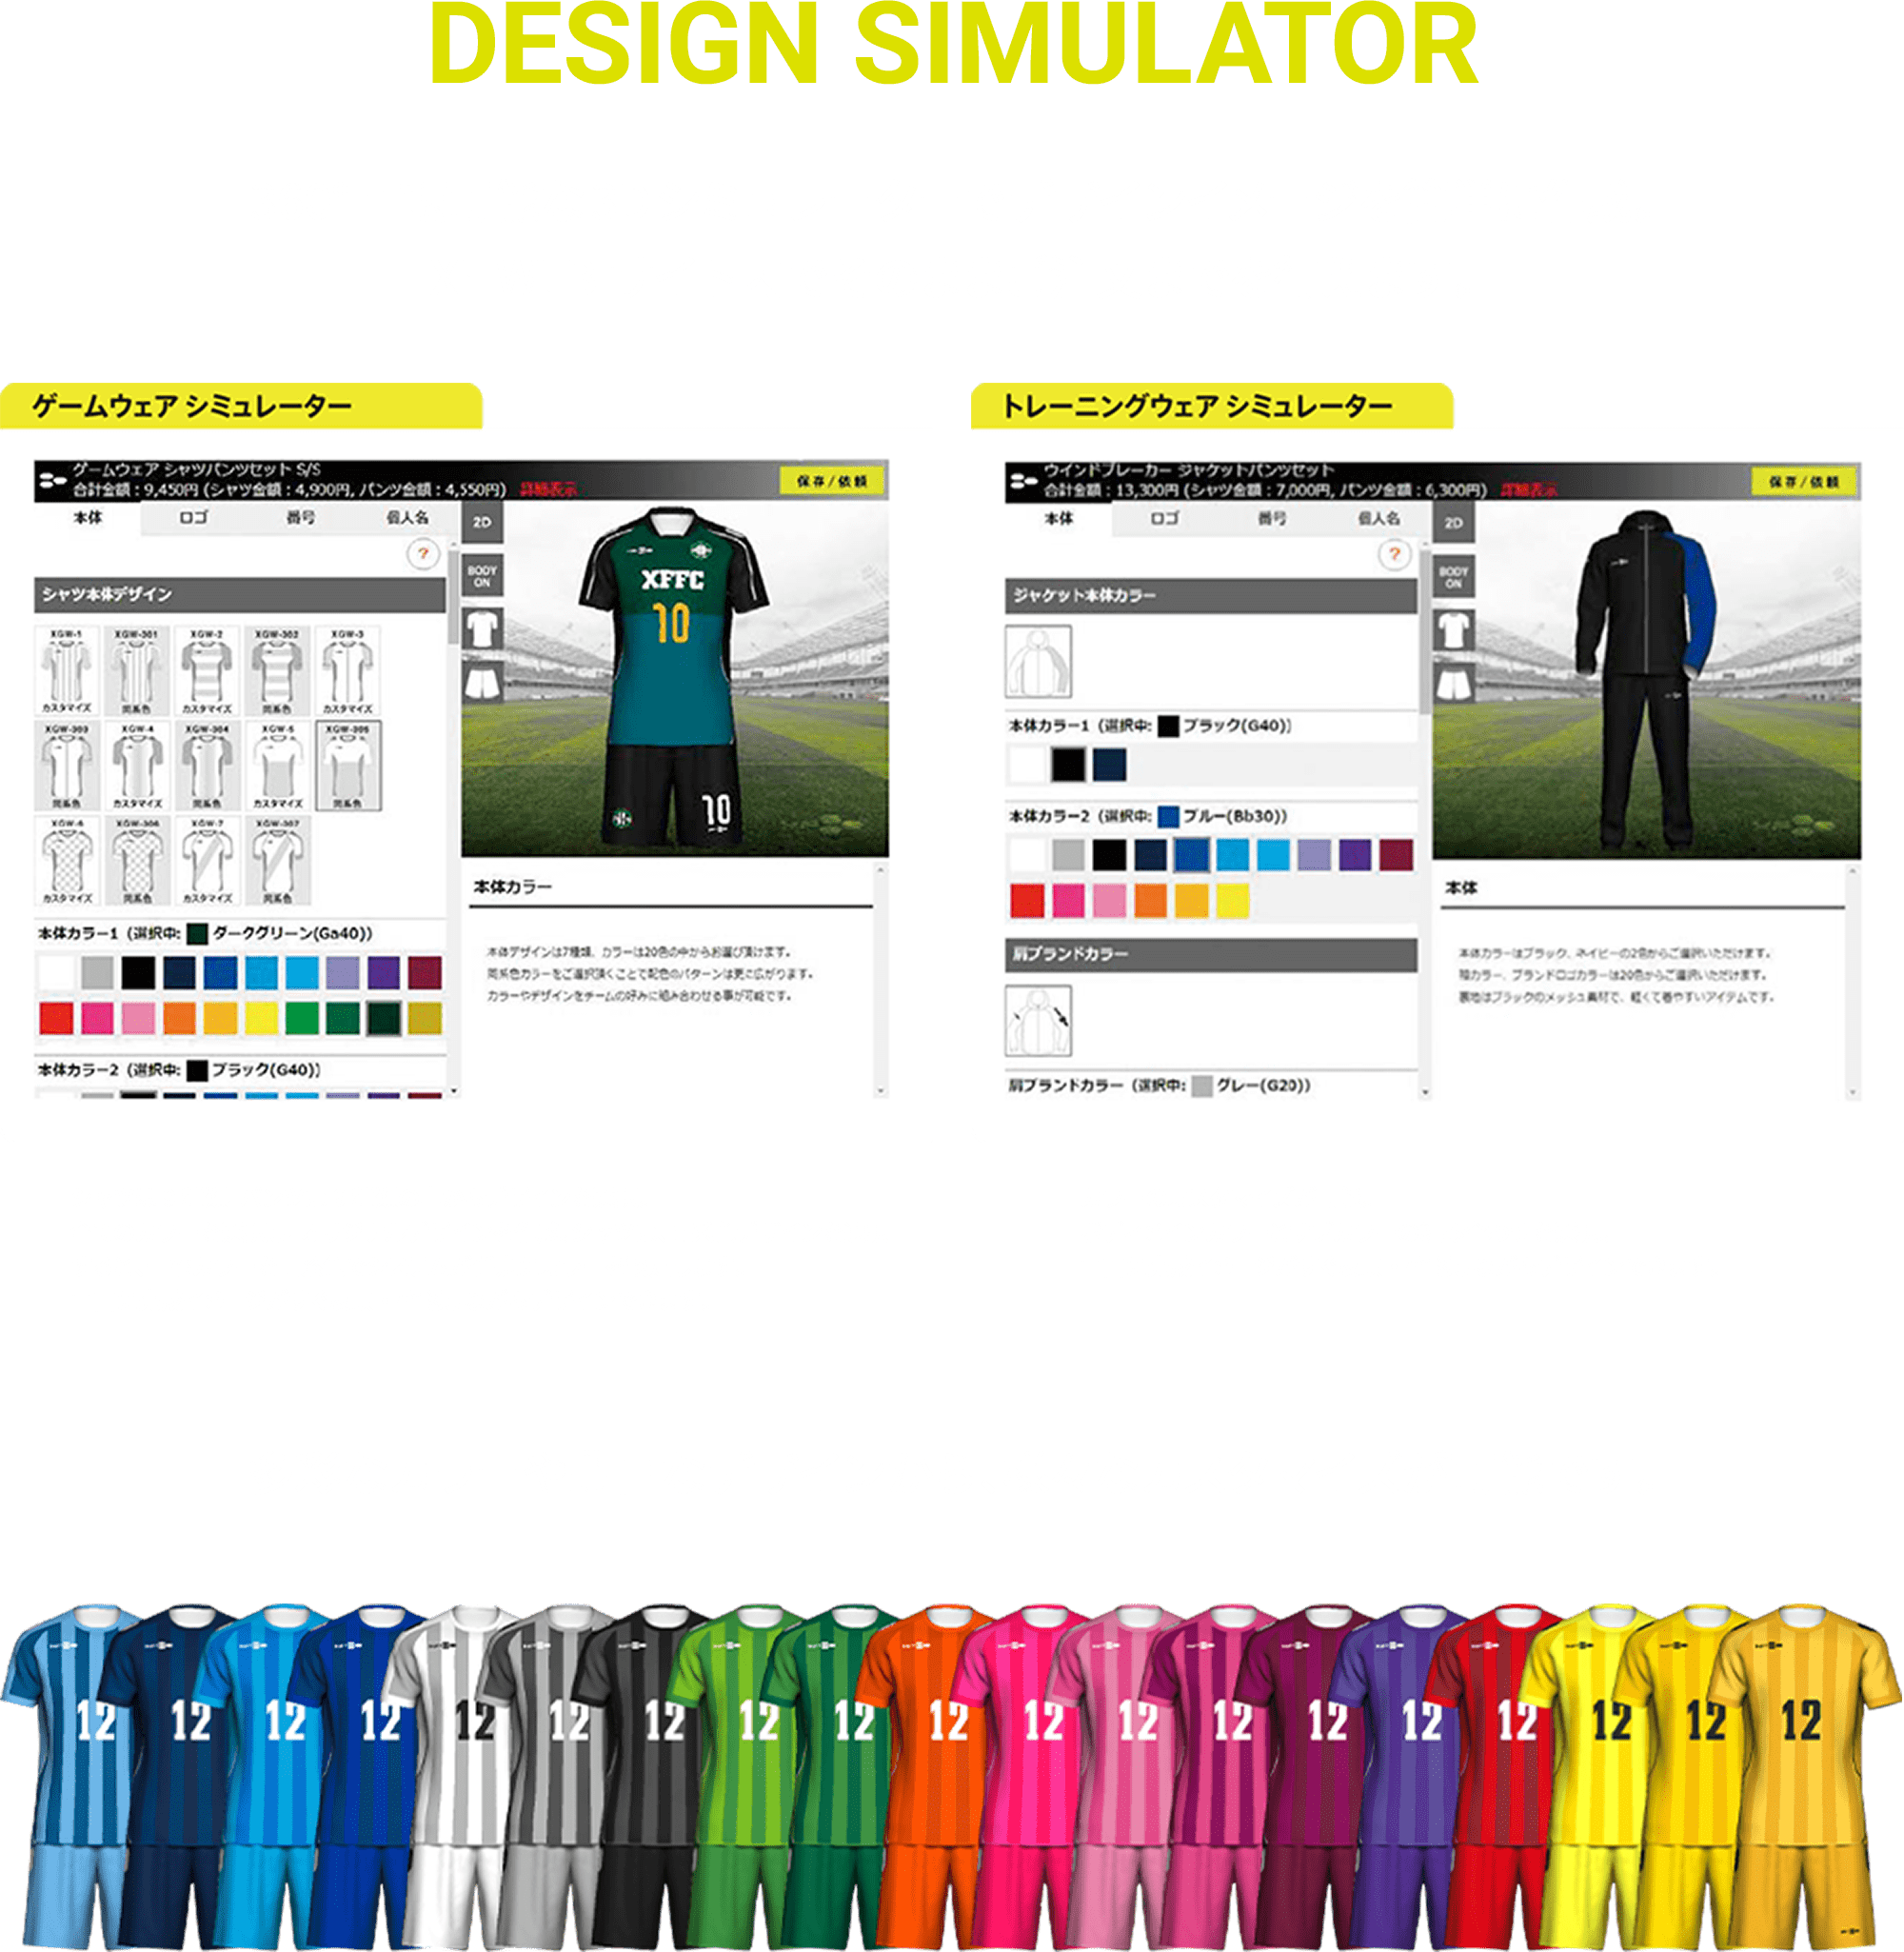 DESIGN SIMULATOR 360°回転可能な3Dシミュレーターでデザインイメージを簡単に作成。XF WEBサイト内でそのままご注文までを行えます。多彩なカラーや豊富なデザインから、様々なカスタマイズが可能です。